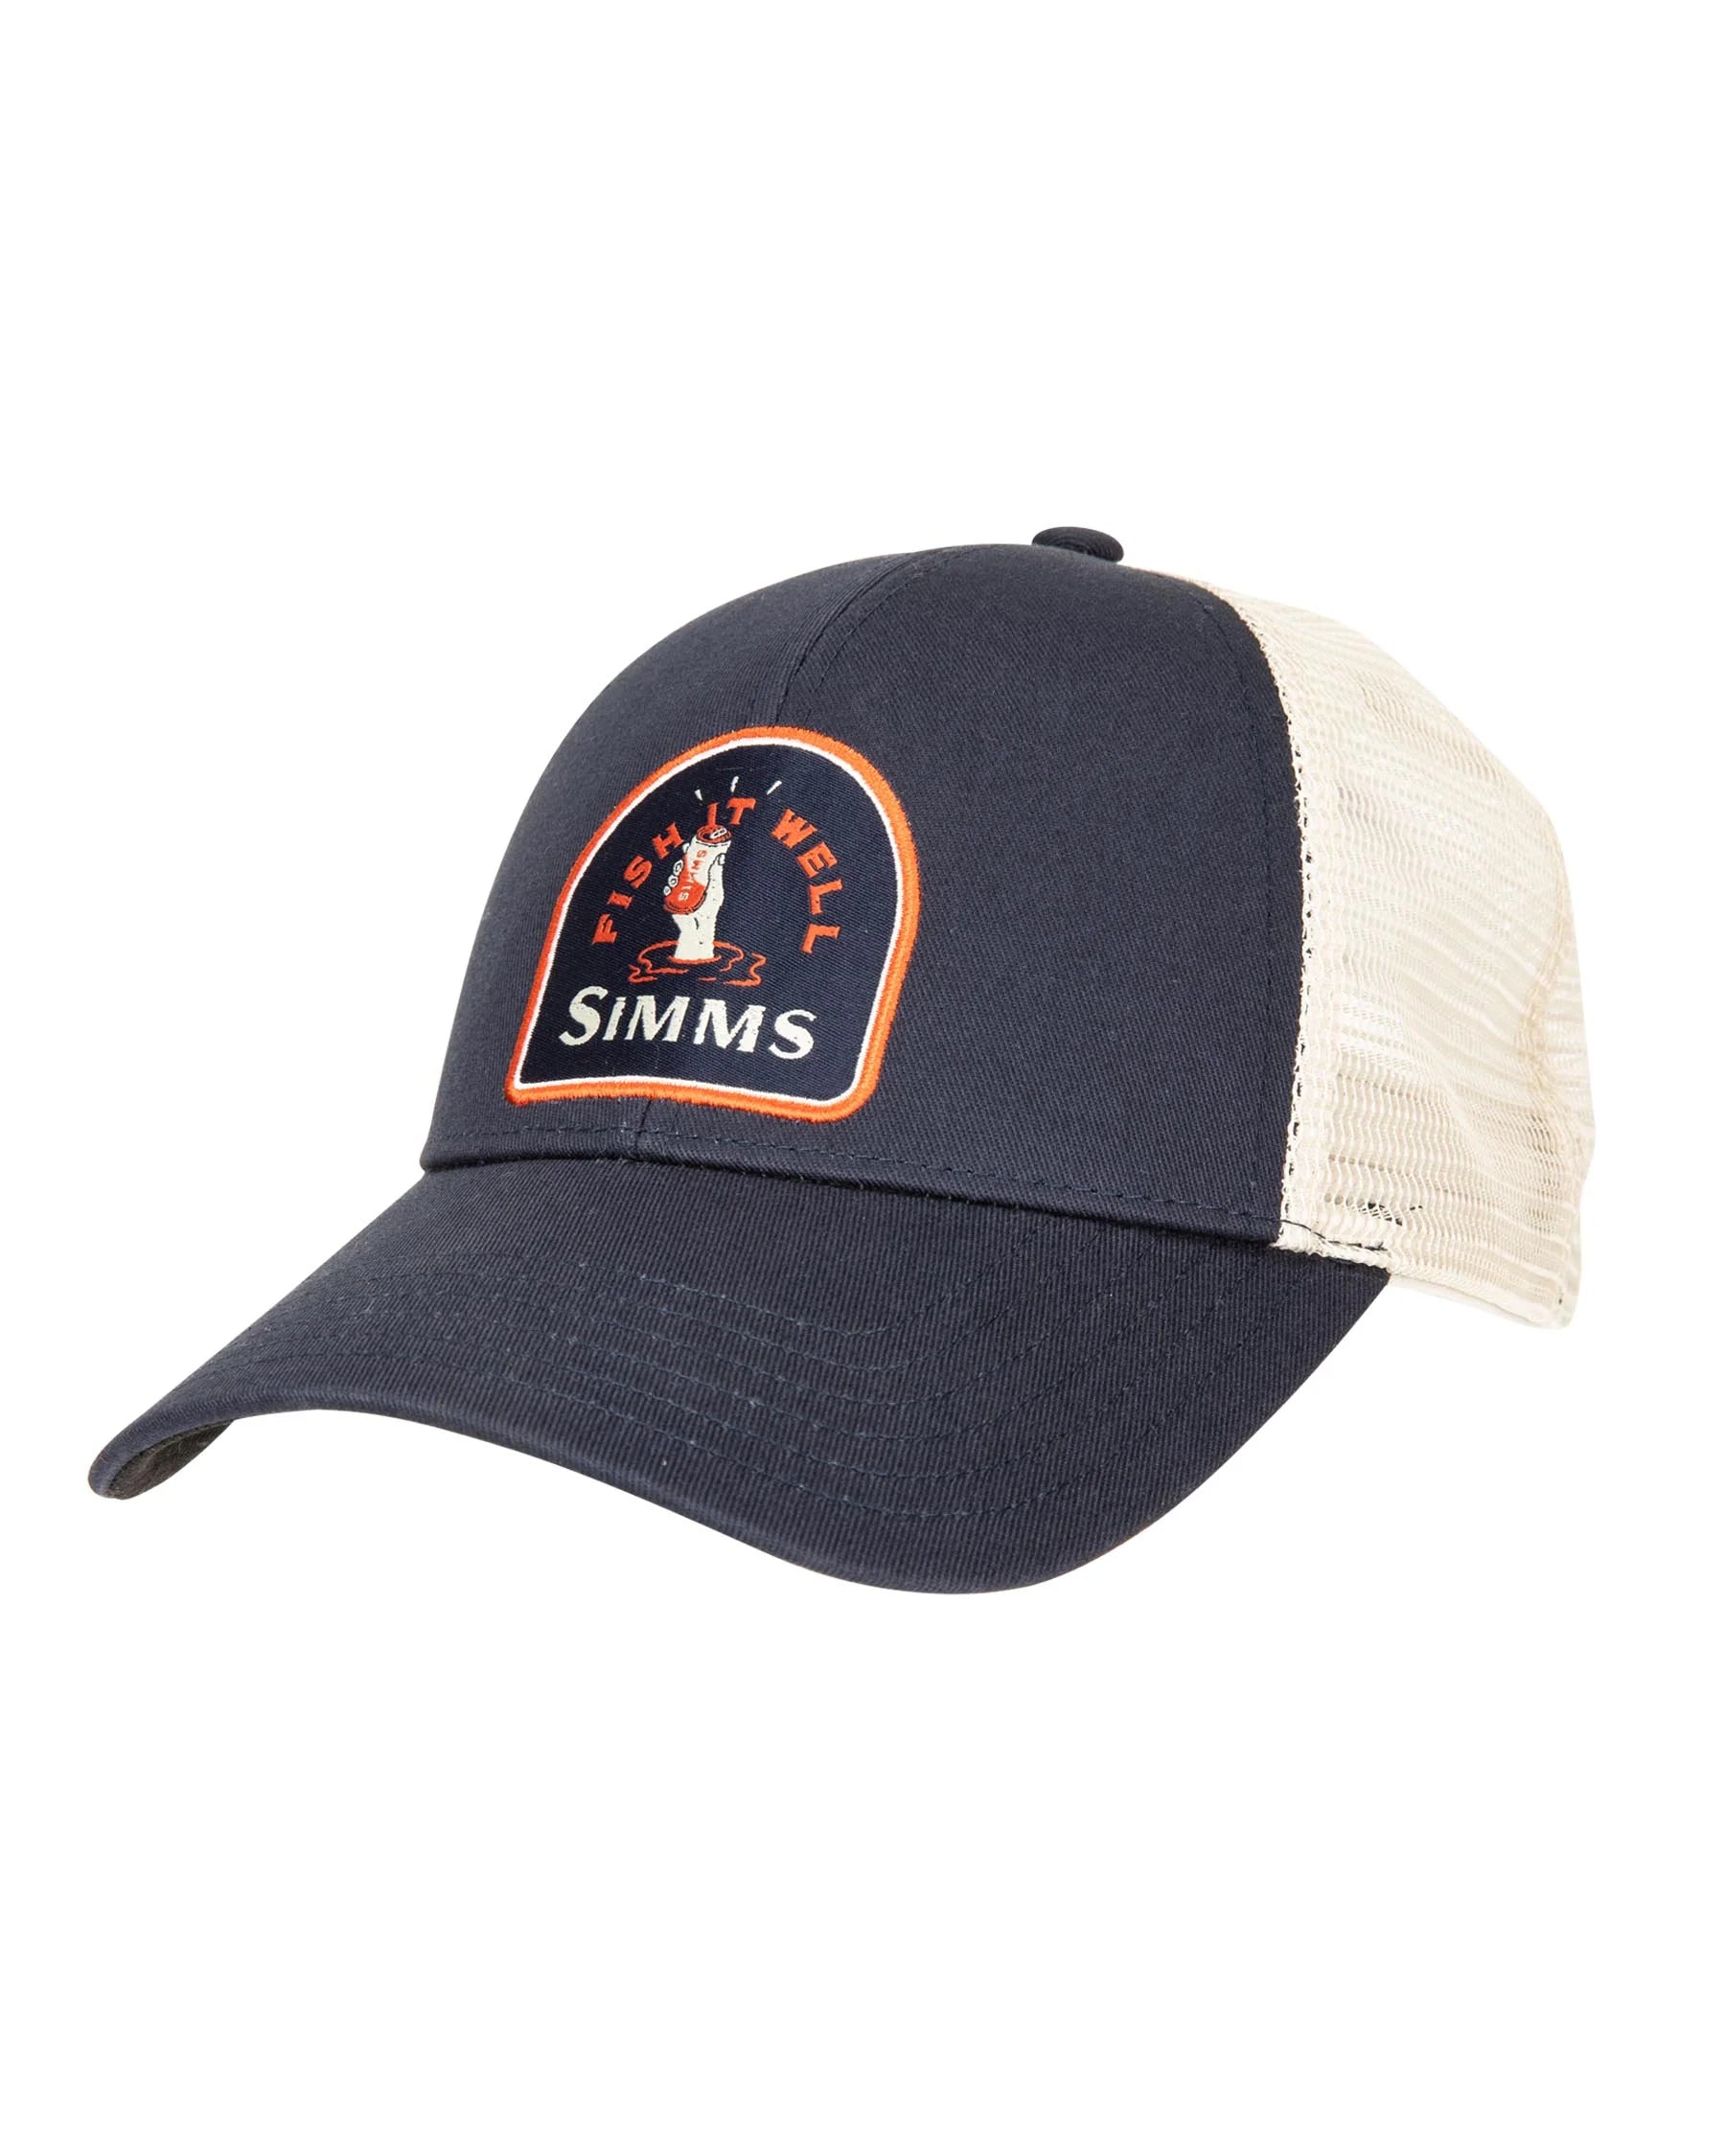 Simms Small Fit Fish it Well Trucker Hat